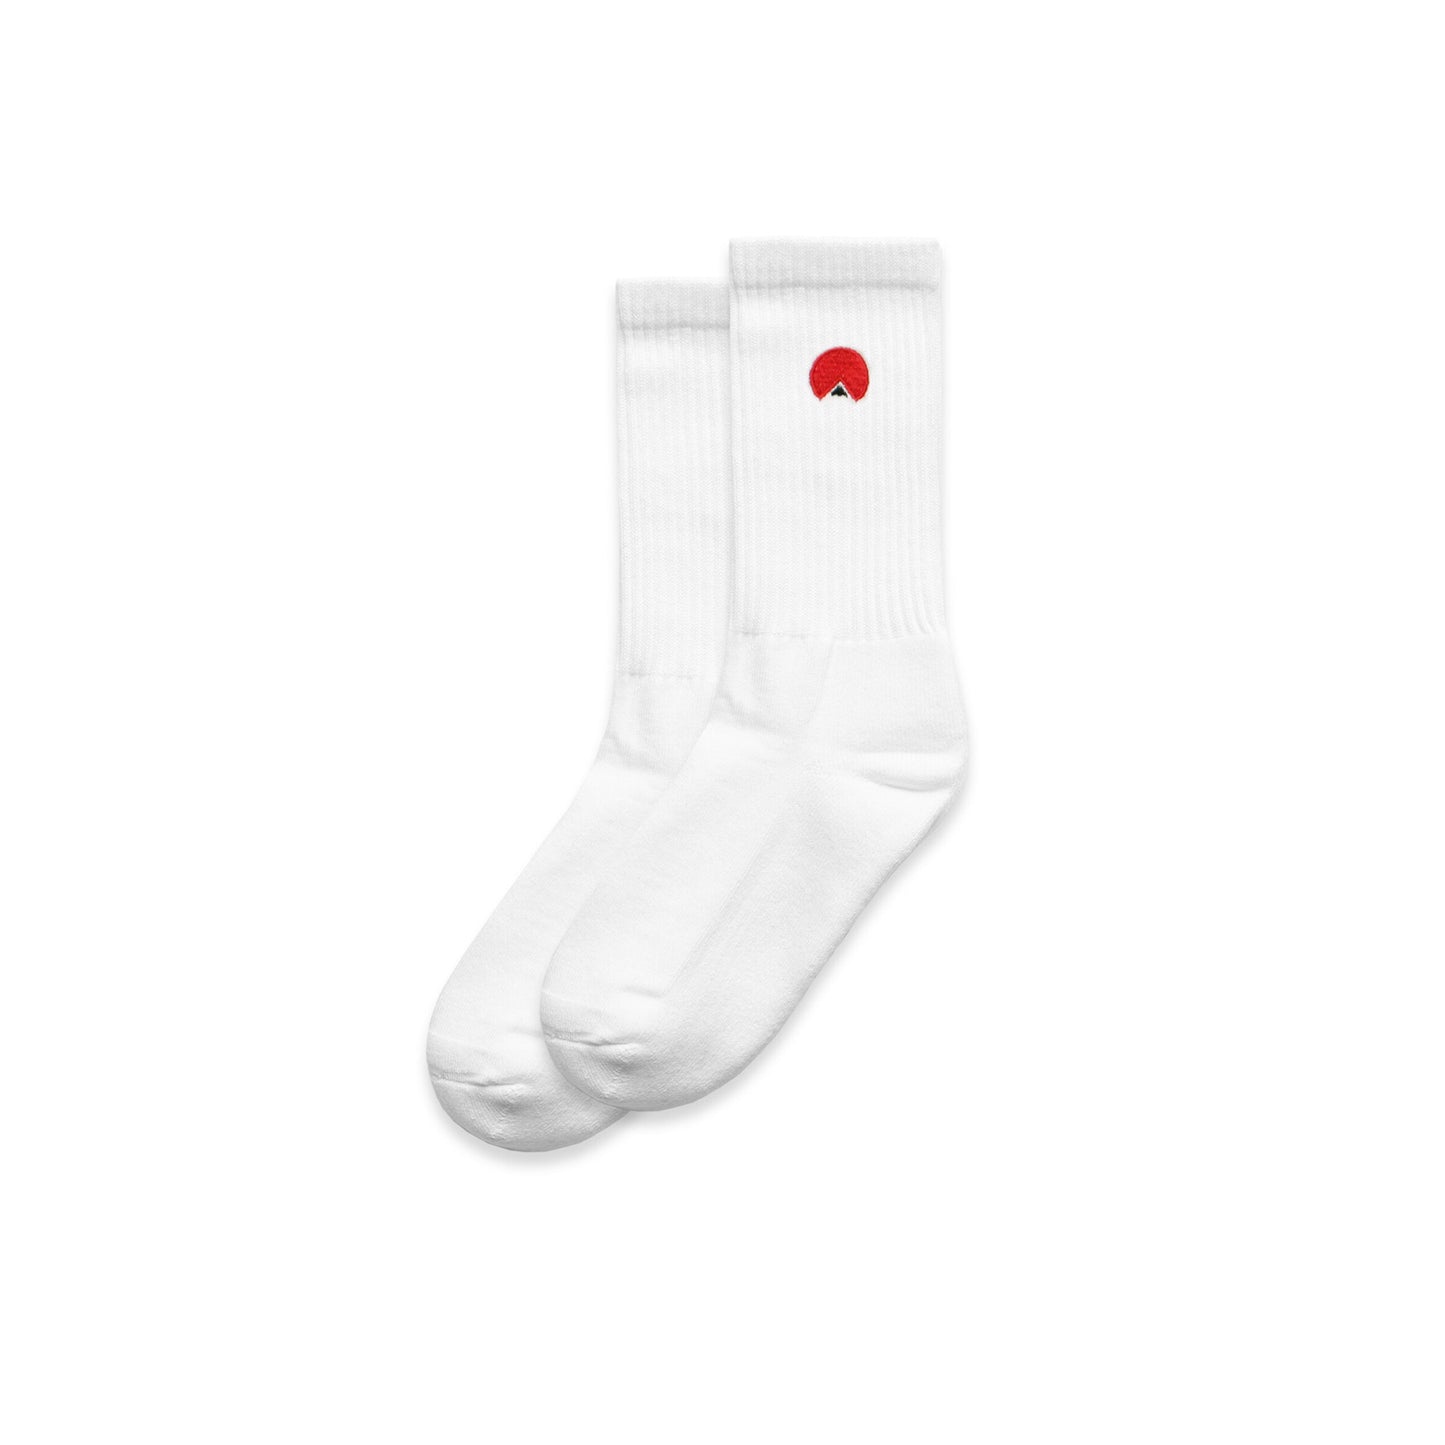 Staple Socks - OKIRU Socks Unisex